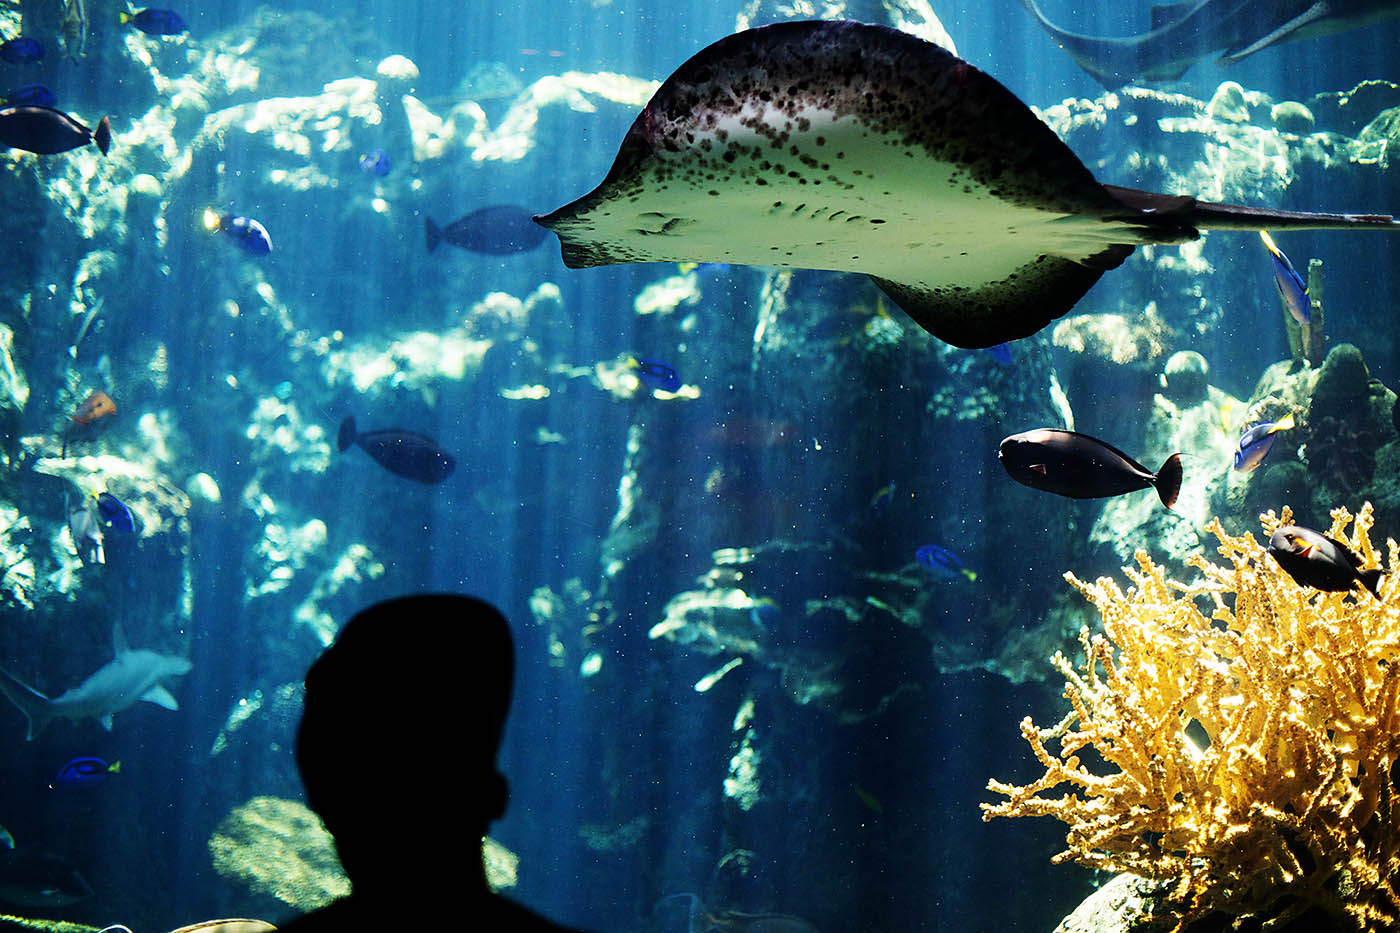 Aquarium of the Pacific, Long Beach CA